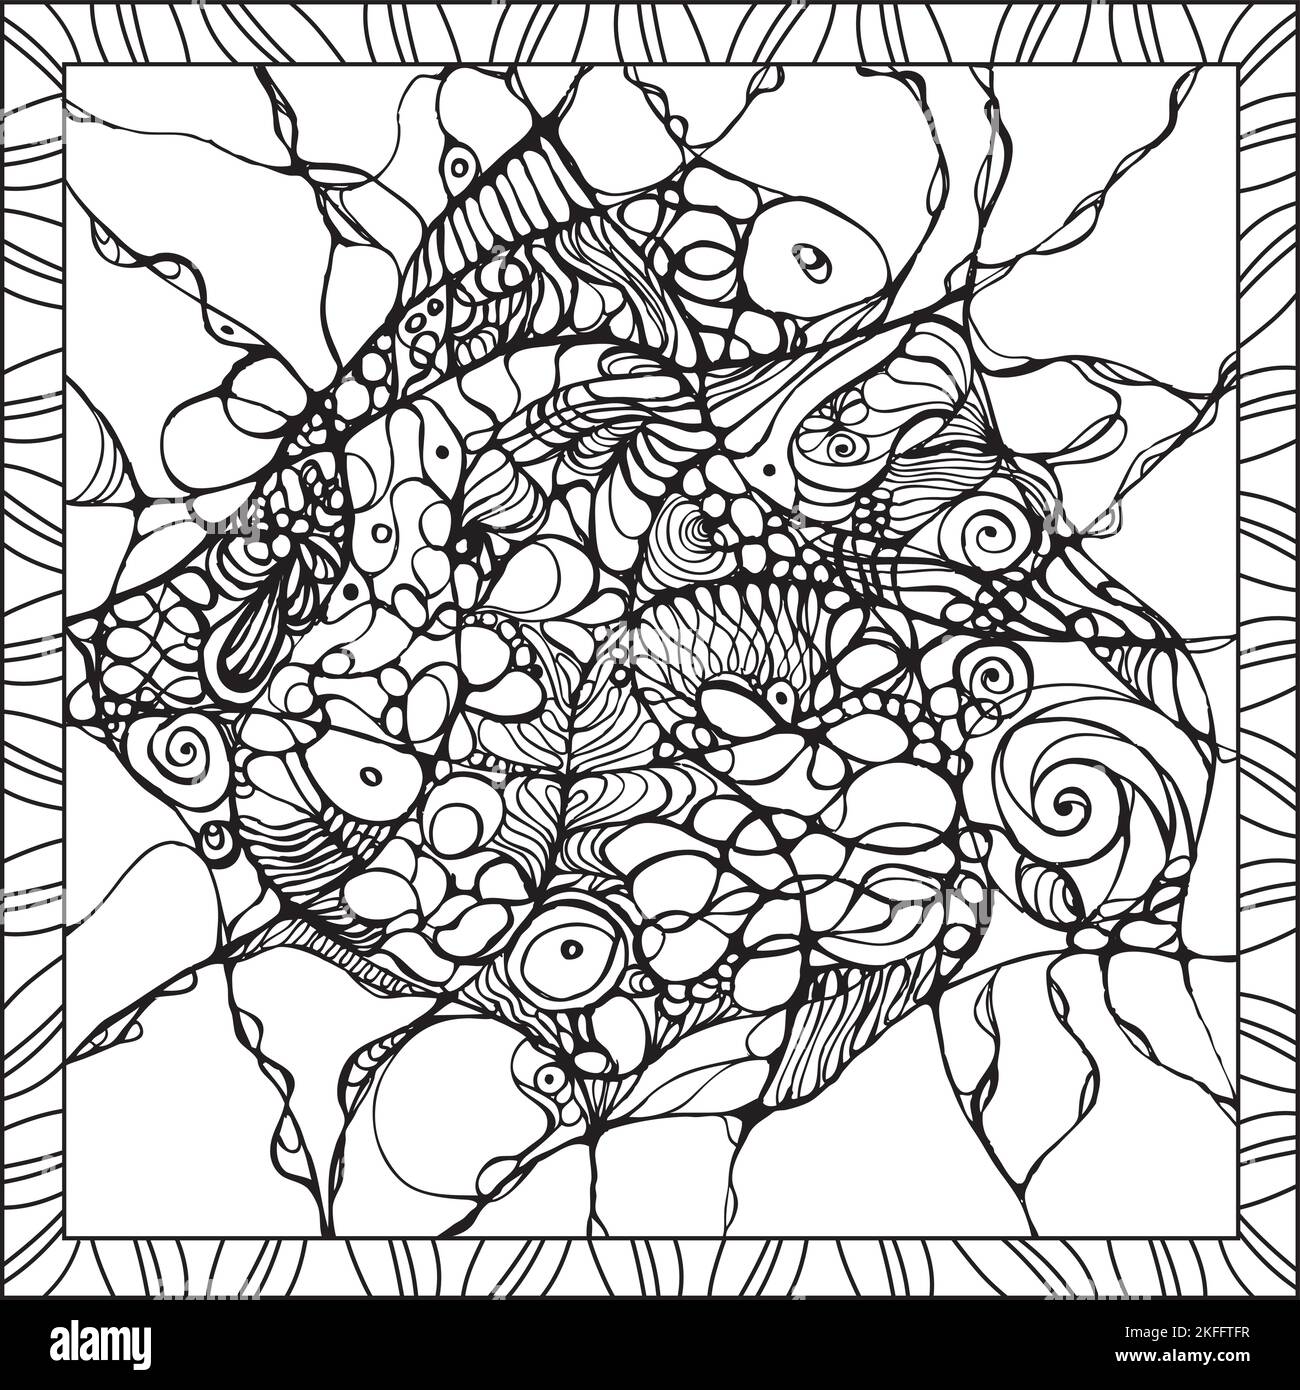 Neurographic Art Drawing Malvorlagen Erwachsene Achtsamkeit Verbindung Neuronen Illustration Schwarz und Weiß Stock Vektor